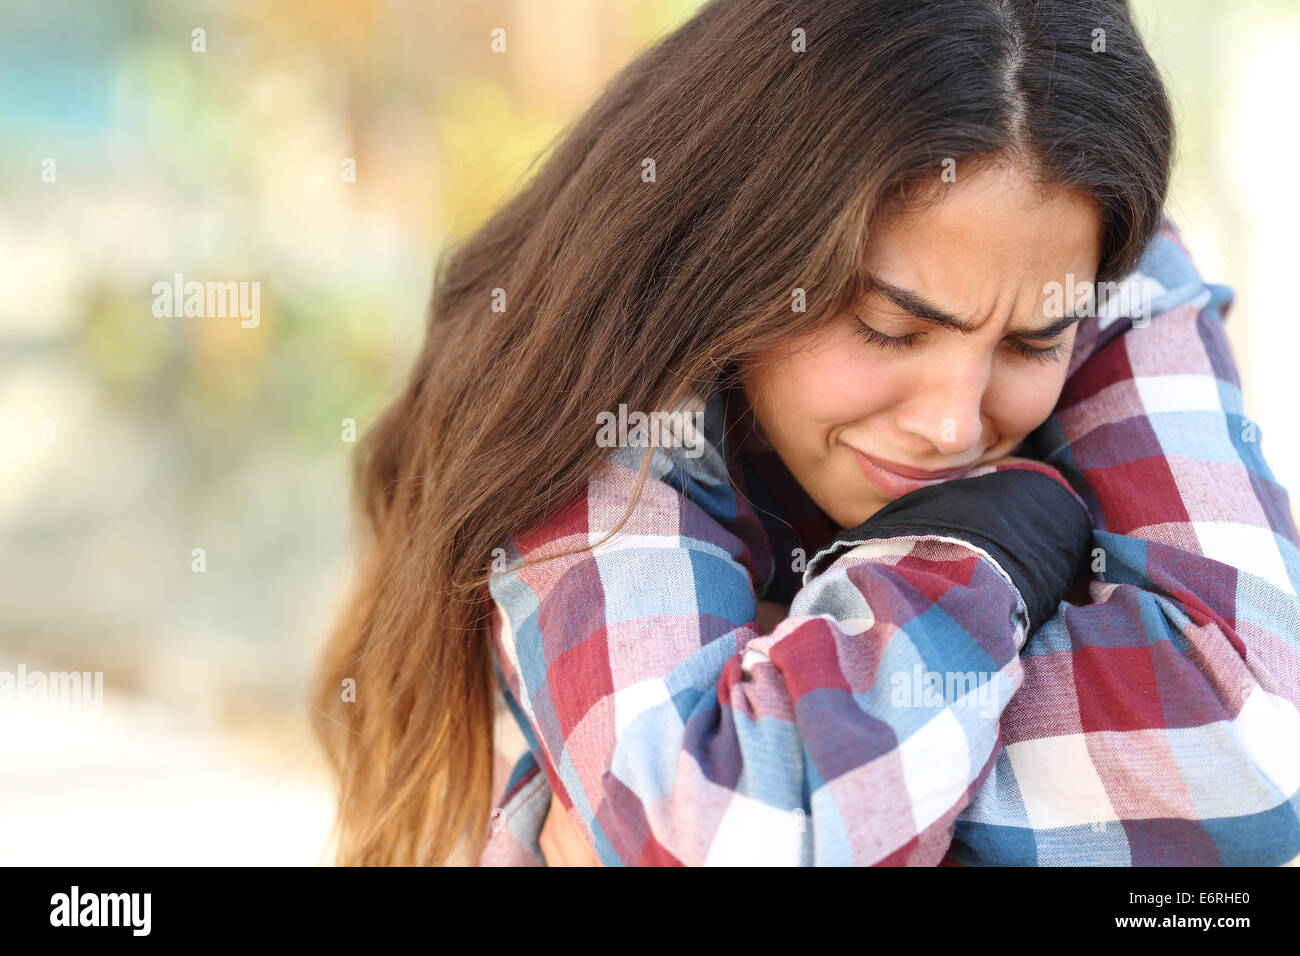 Gros plan d'une jeune fille adolescente inquiète et triste à pleurer à l'extérieur Banque D'Images